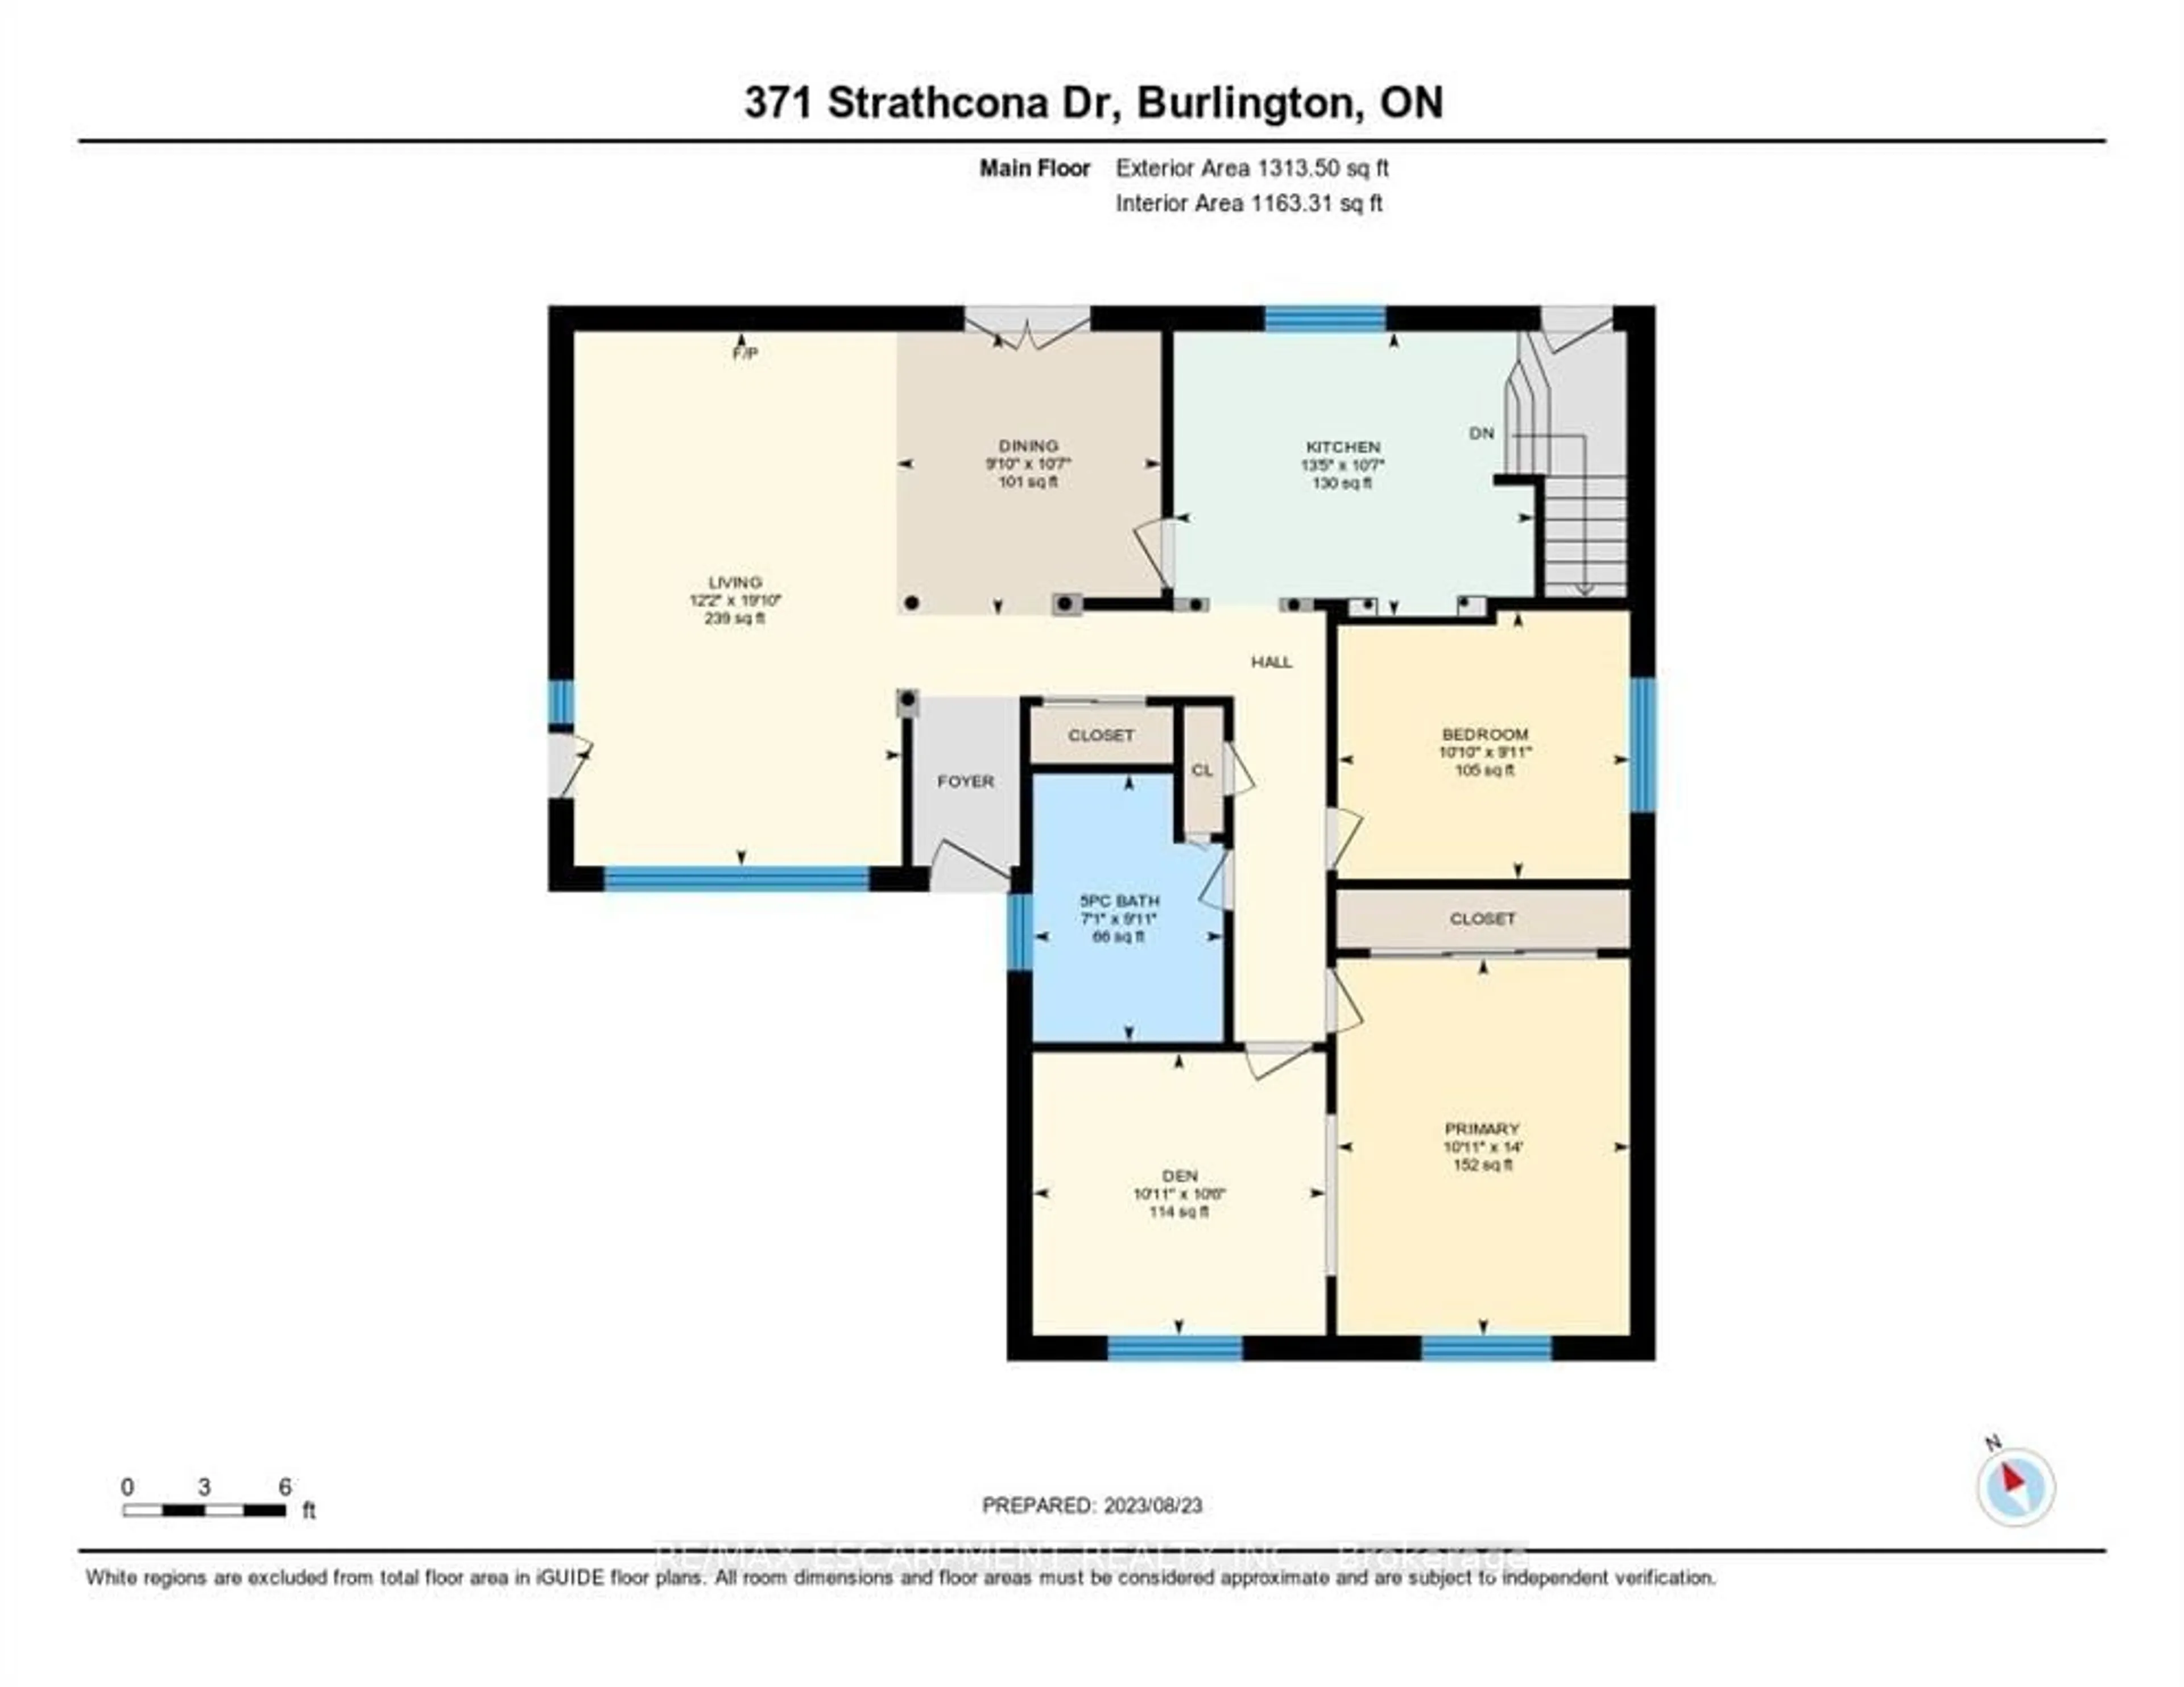 Floor plan for 371 Strathcona Dr, Burlington Ontario L7L 2E4